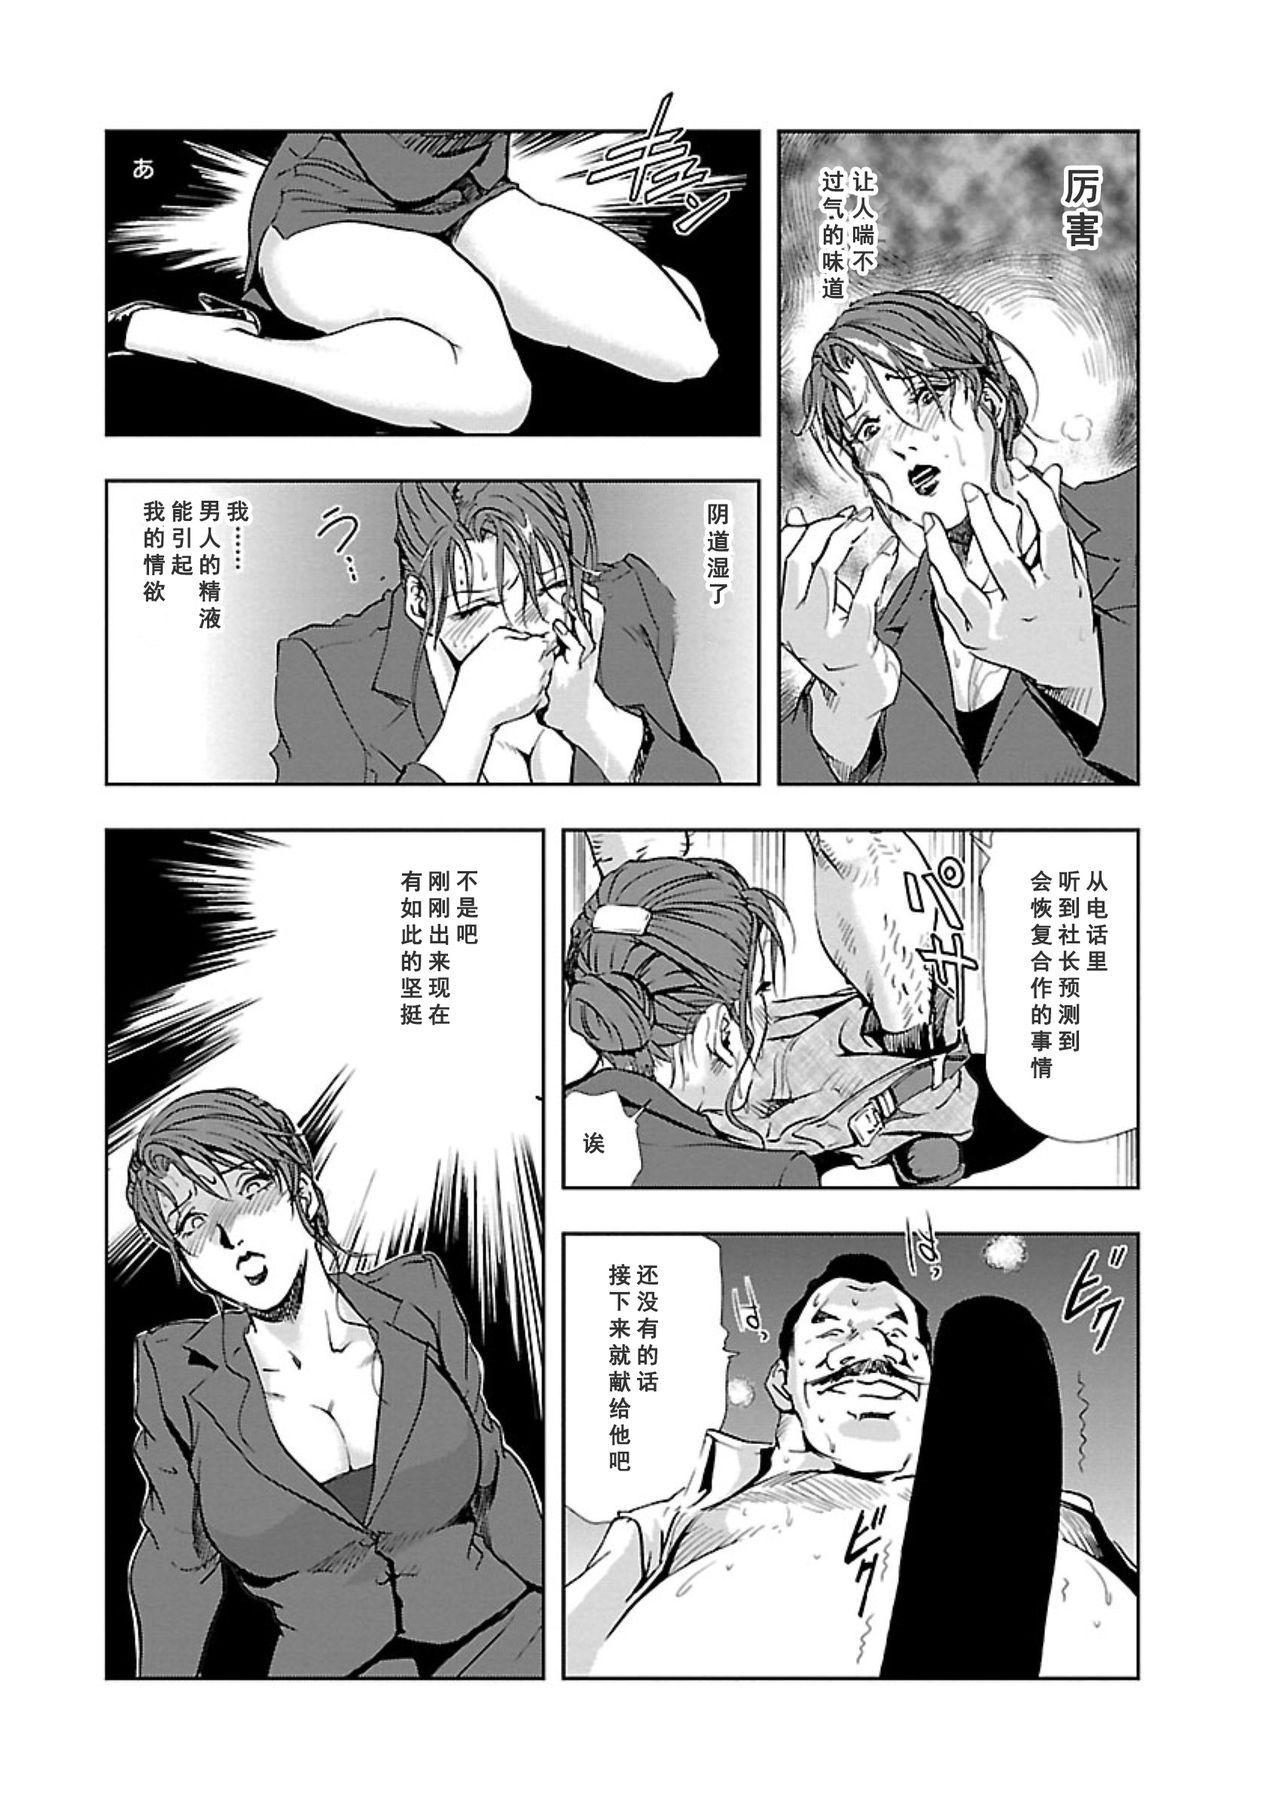 【不可视汉化】[Misaki Yukihiro] Nikuhisyo Yukiko chapter 04  [Digital] 14